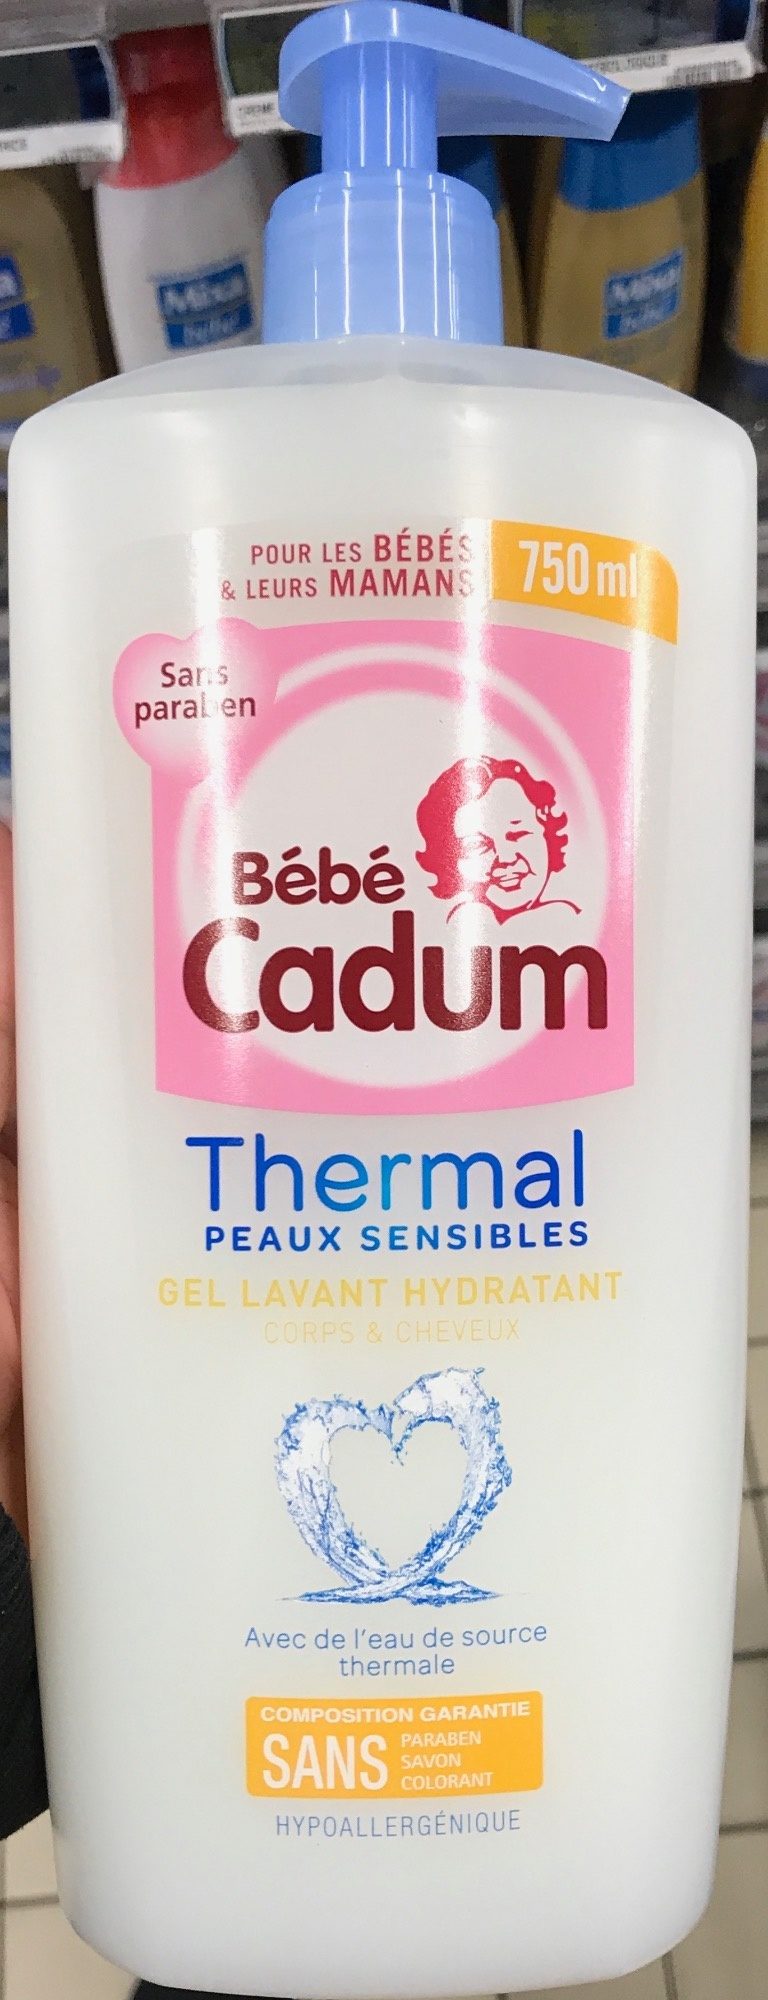 Thermal Peaux Sensibles Gel lavant hydratant - Tuote - fr